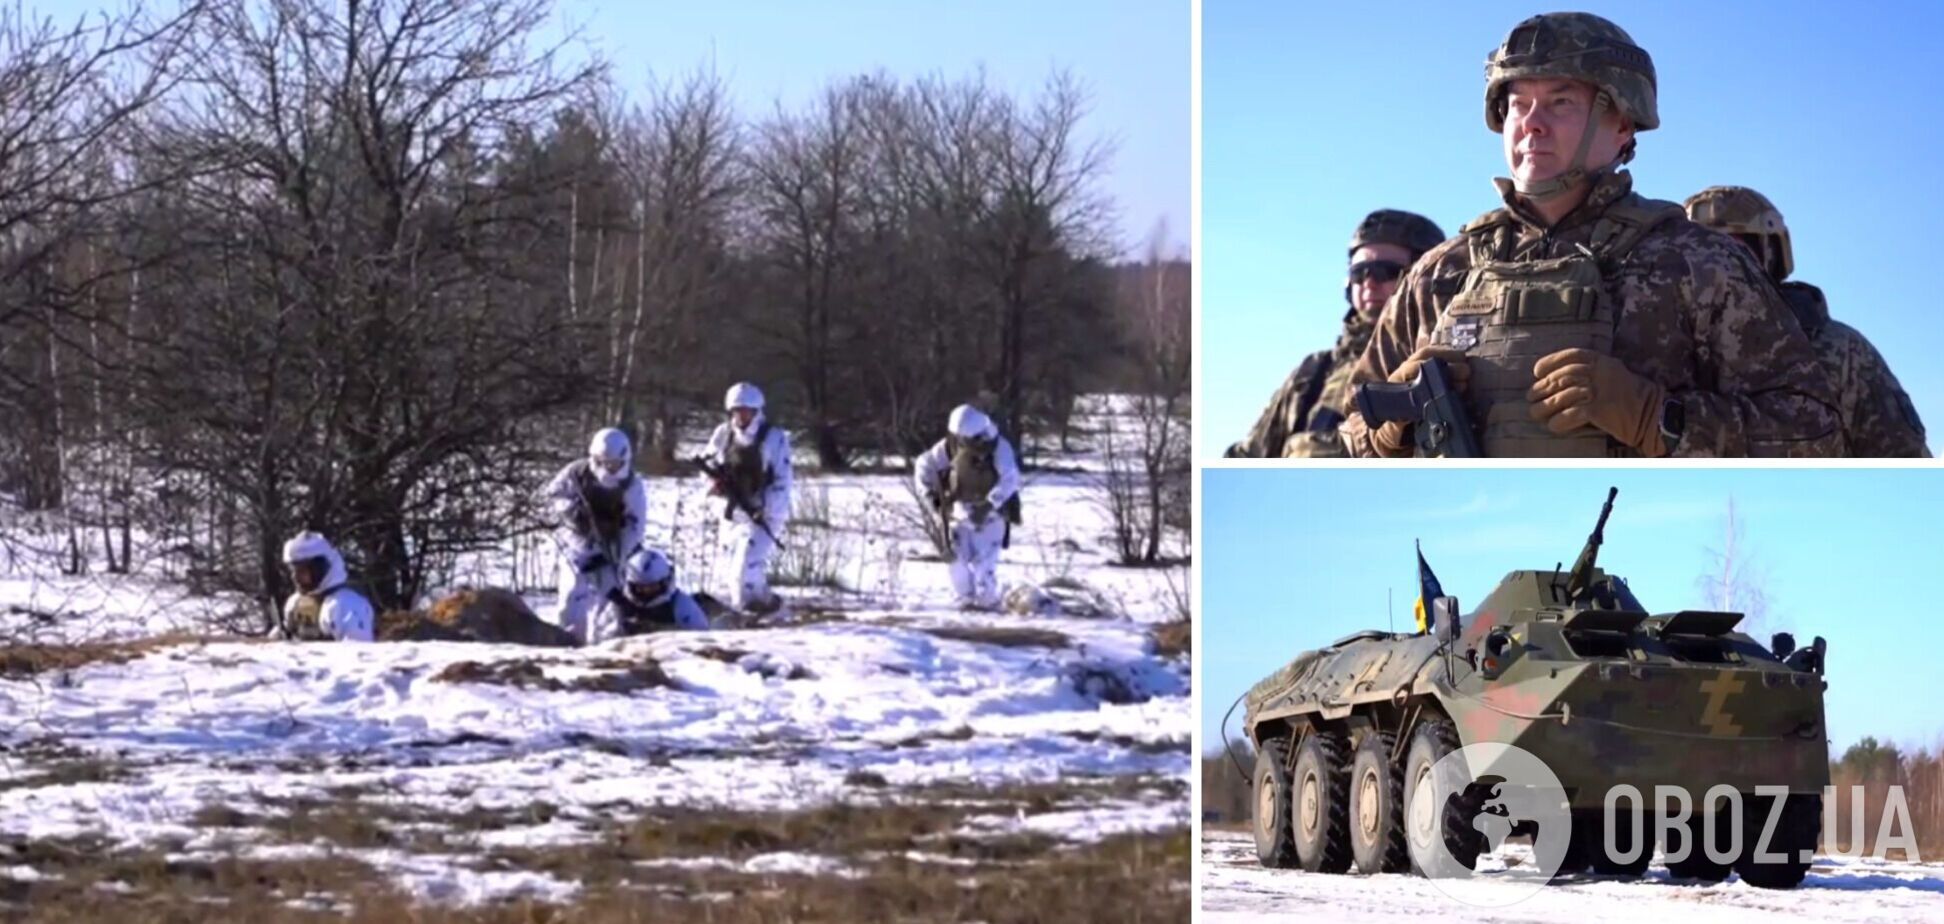 'Процессом руководят опытные генералы': Наев рассказал об учениях в Северной операционной зоне. Видео